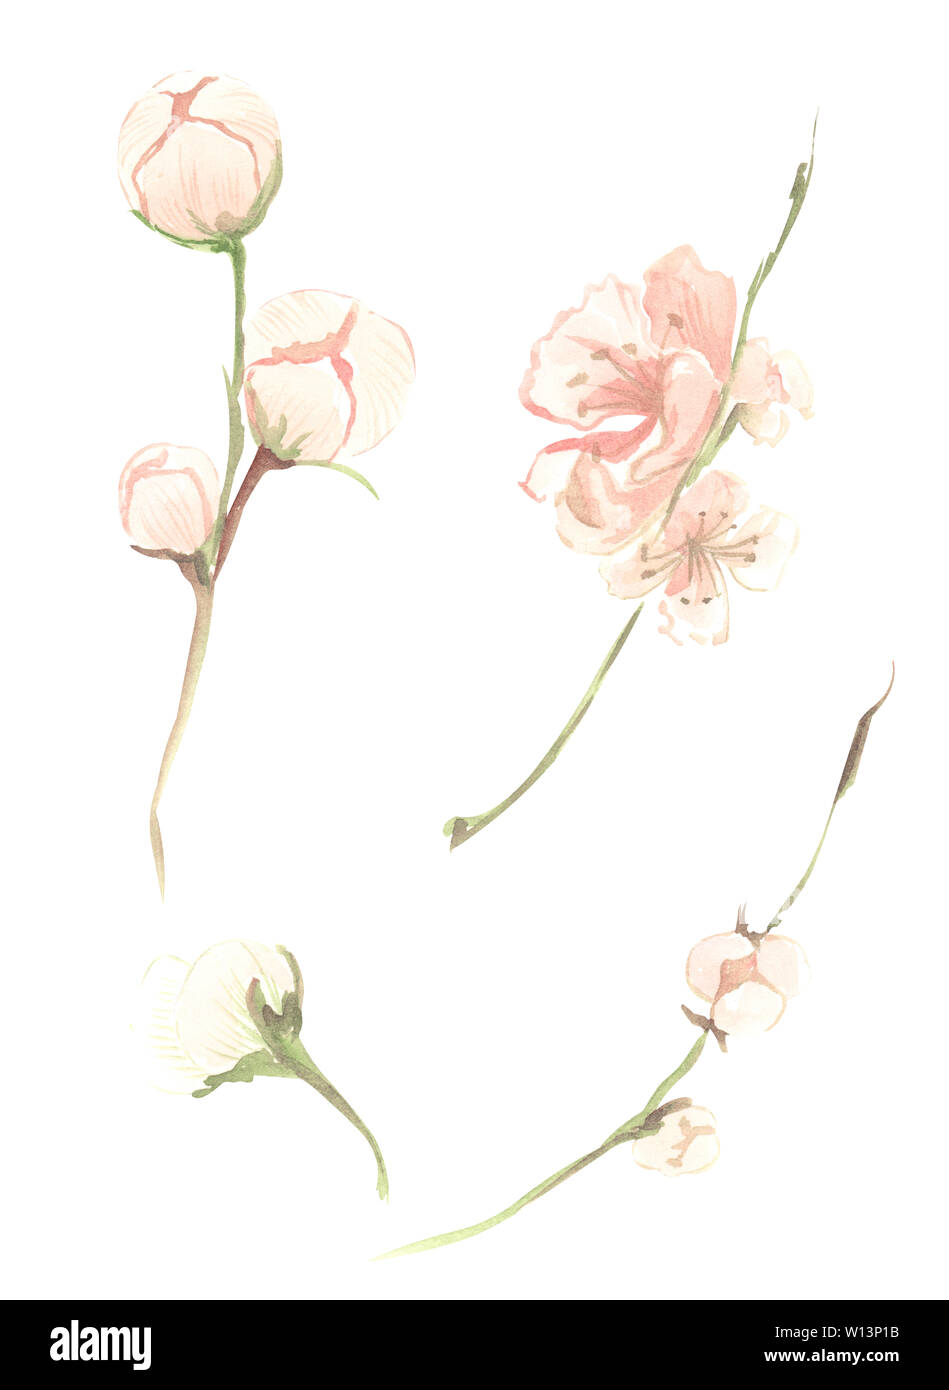 Illustration de l'aquarelle de fleurs fruits rose pêche avec des feuilles vertes sur une branche sur un cas isolé sur fond blanc Banque D'Images